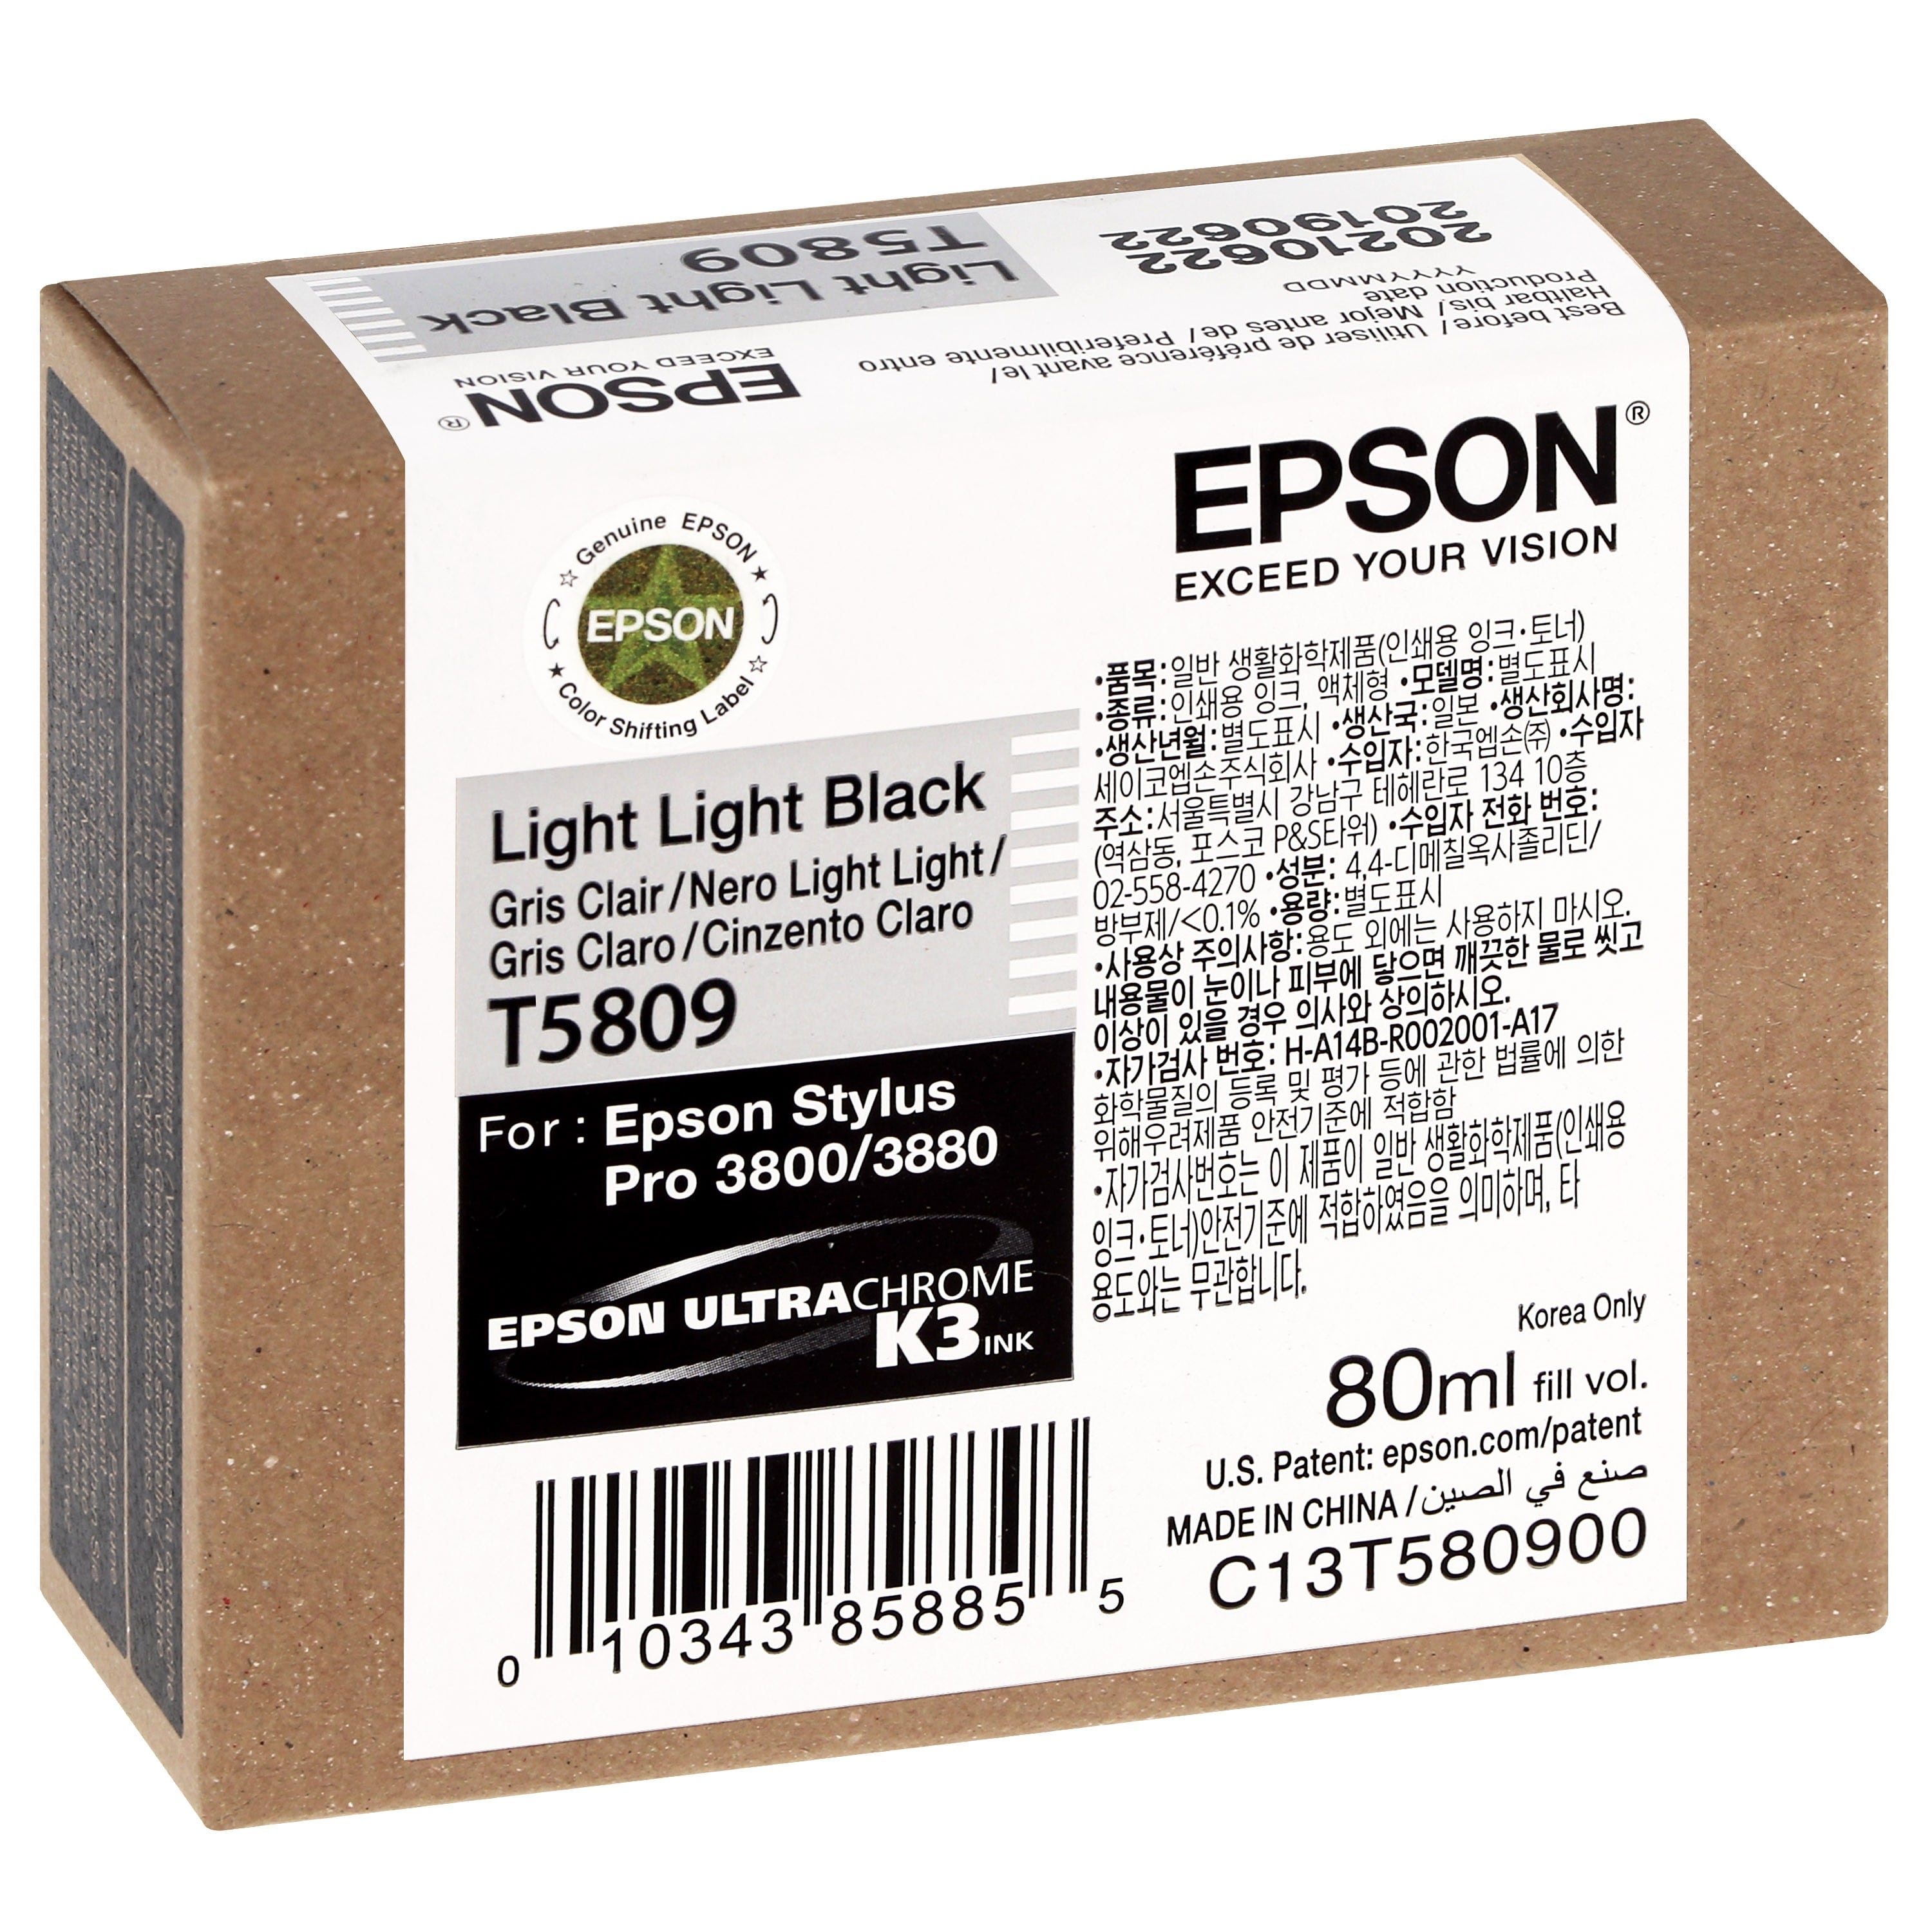 EPSON - Cartouche d'encre traceur T5809 Pour imprimante 3800/3880 Gris clair - 80ml